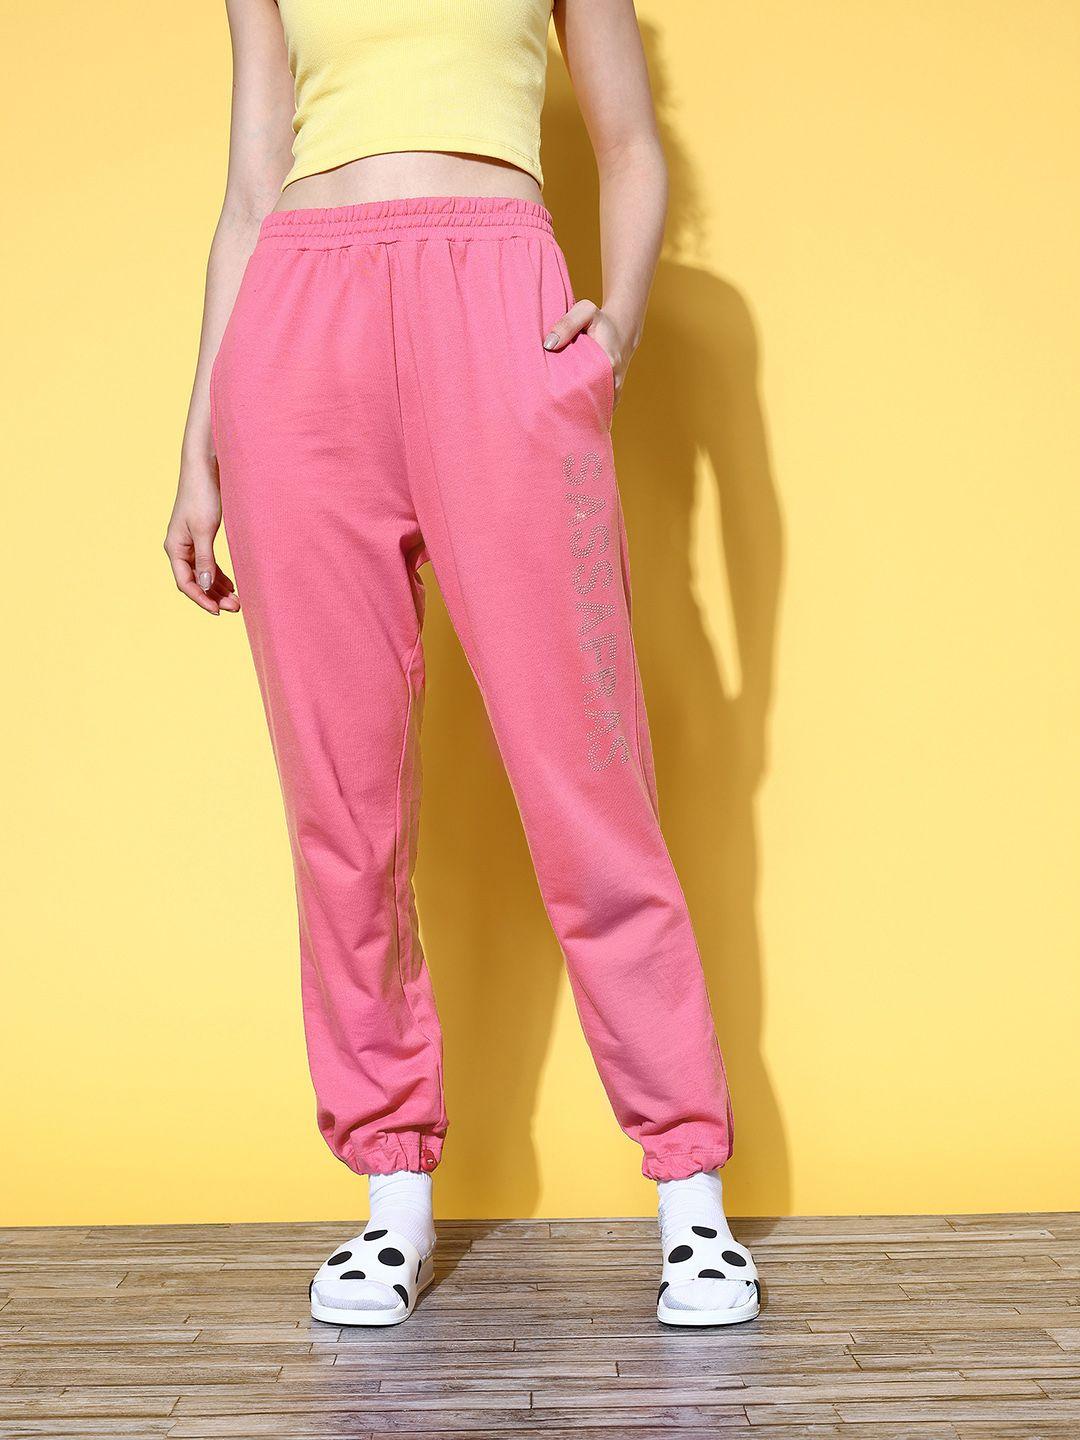 sassafras-women-pink-printed-glam-game-track-pants